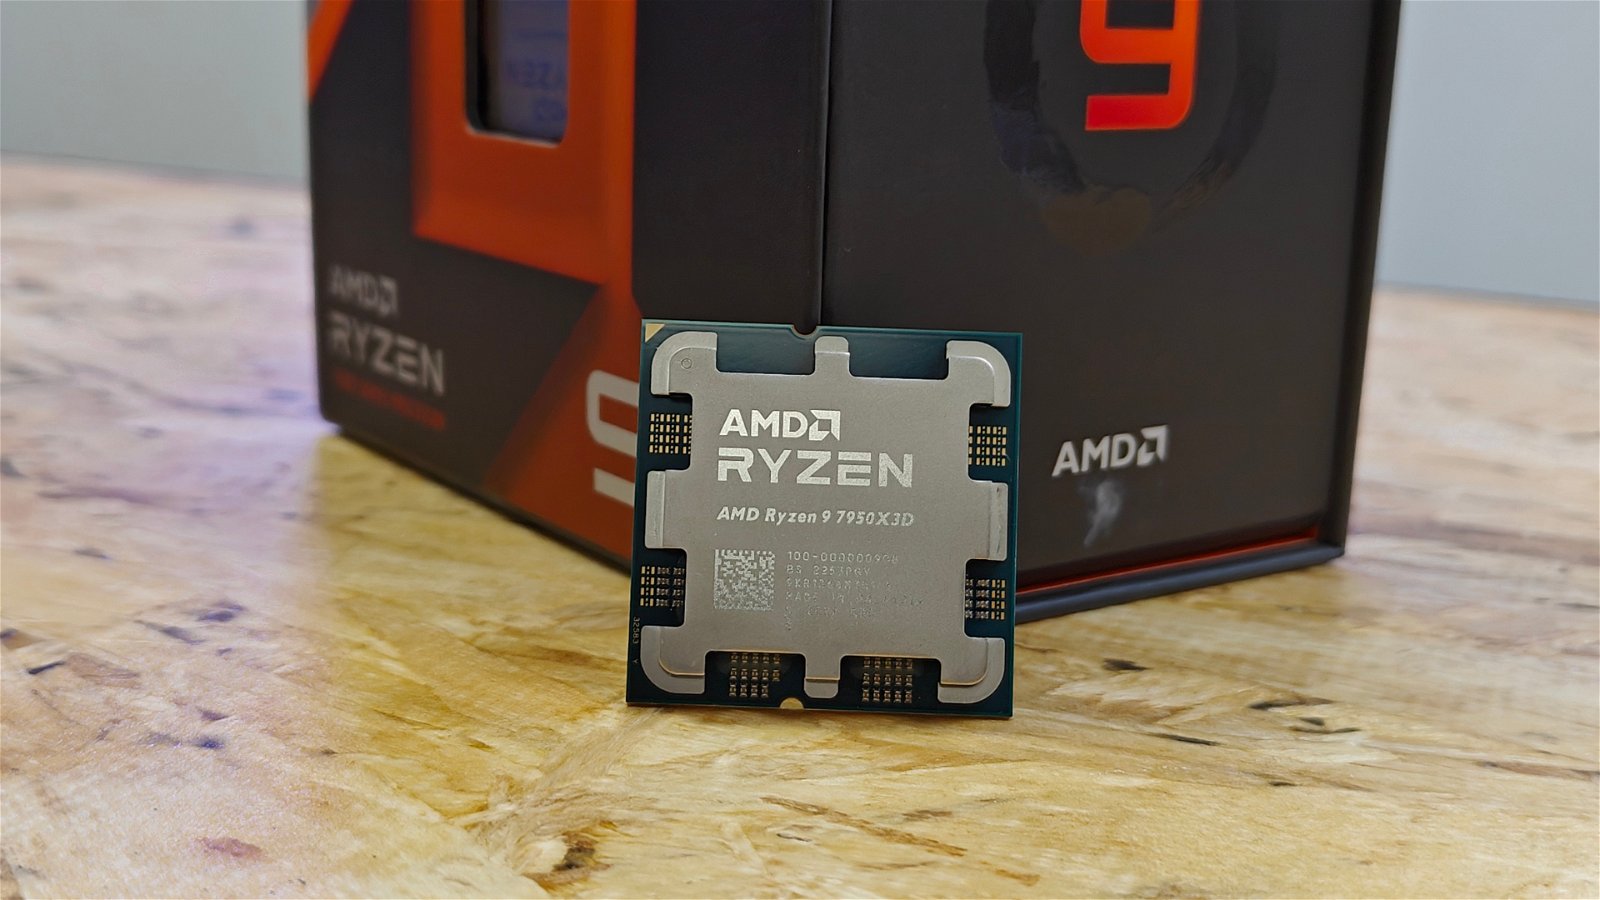 AMD Ryzen 9 7950X3D CPU review